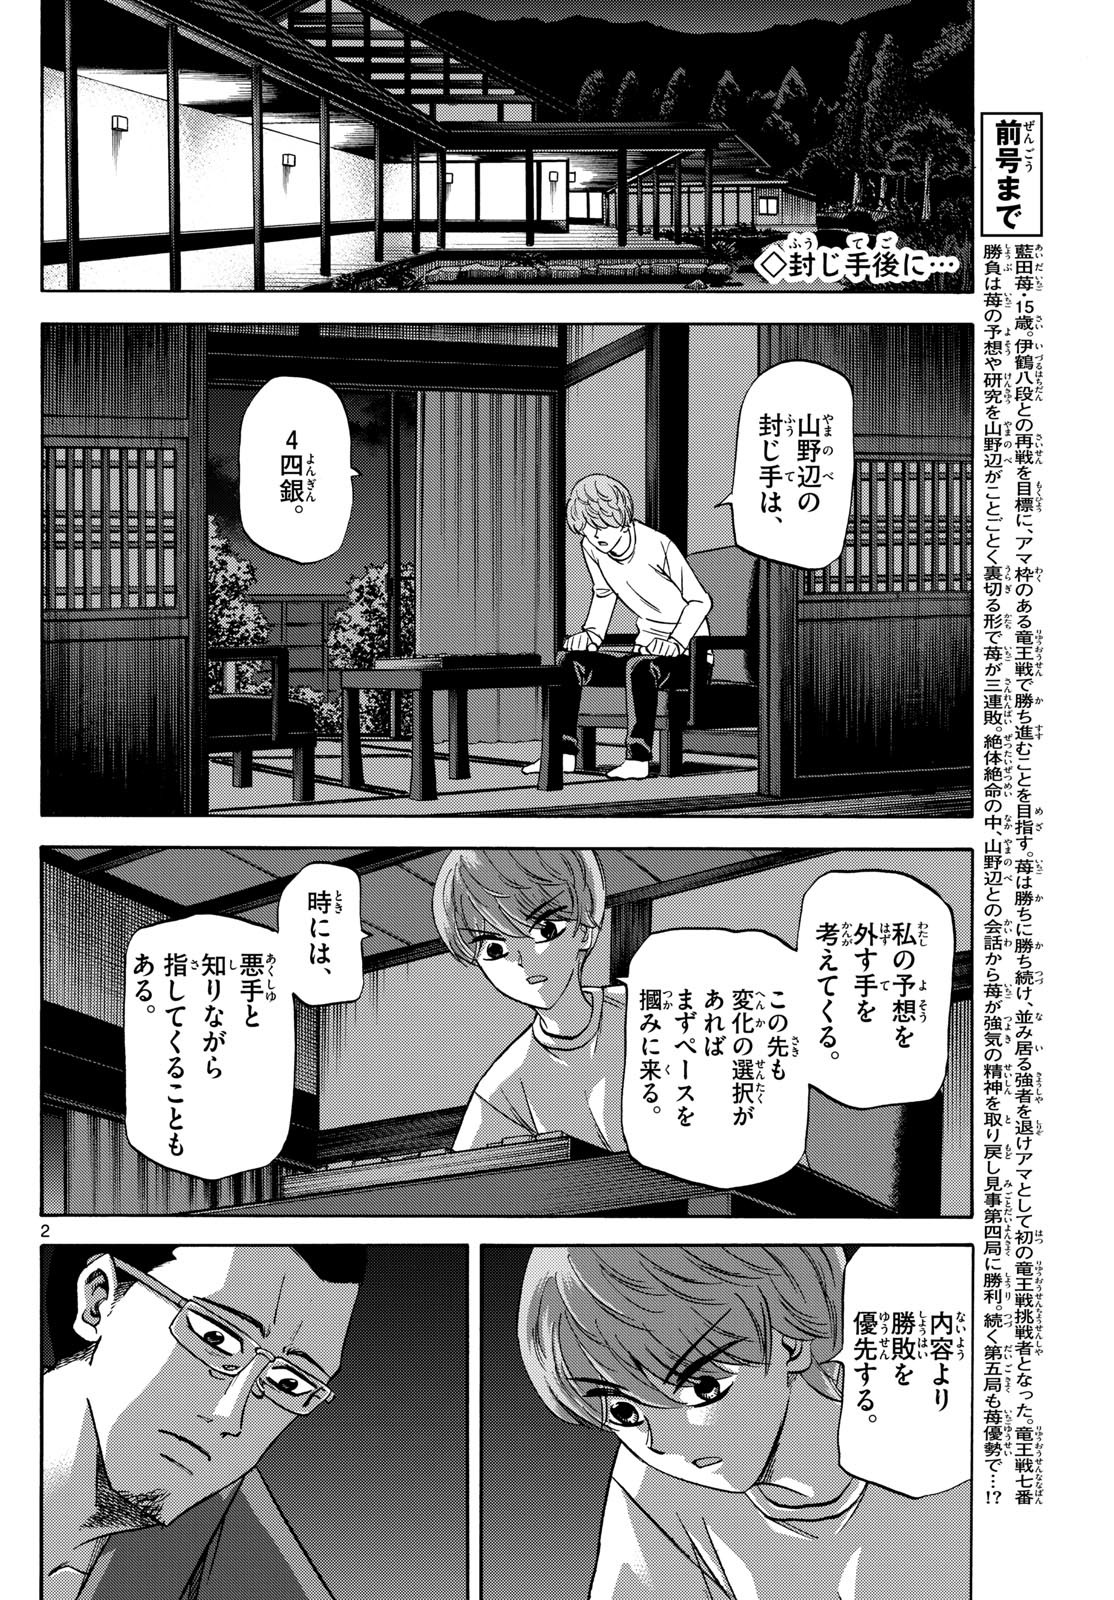 Ryu-to-Ichigo - Chapter 166 - Page 2